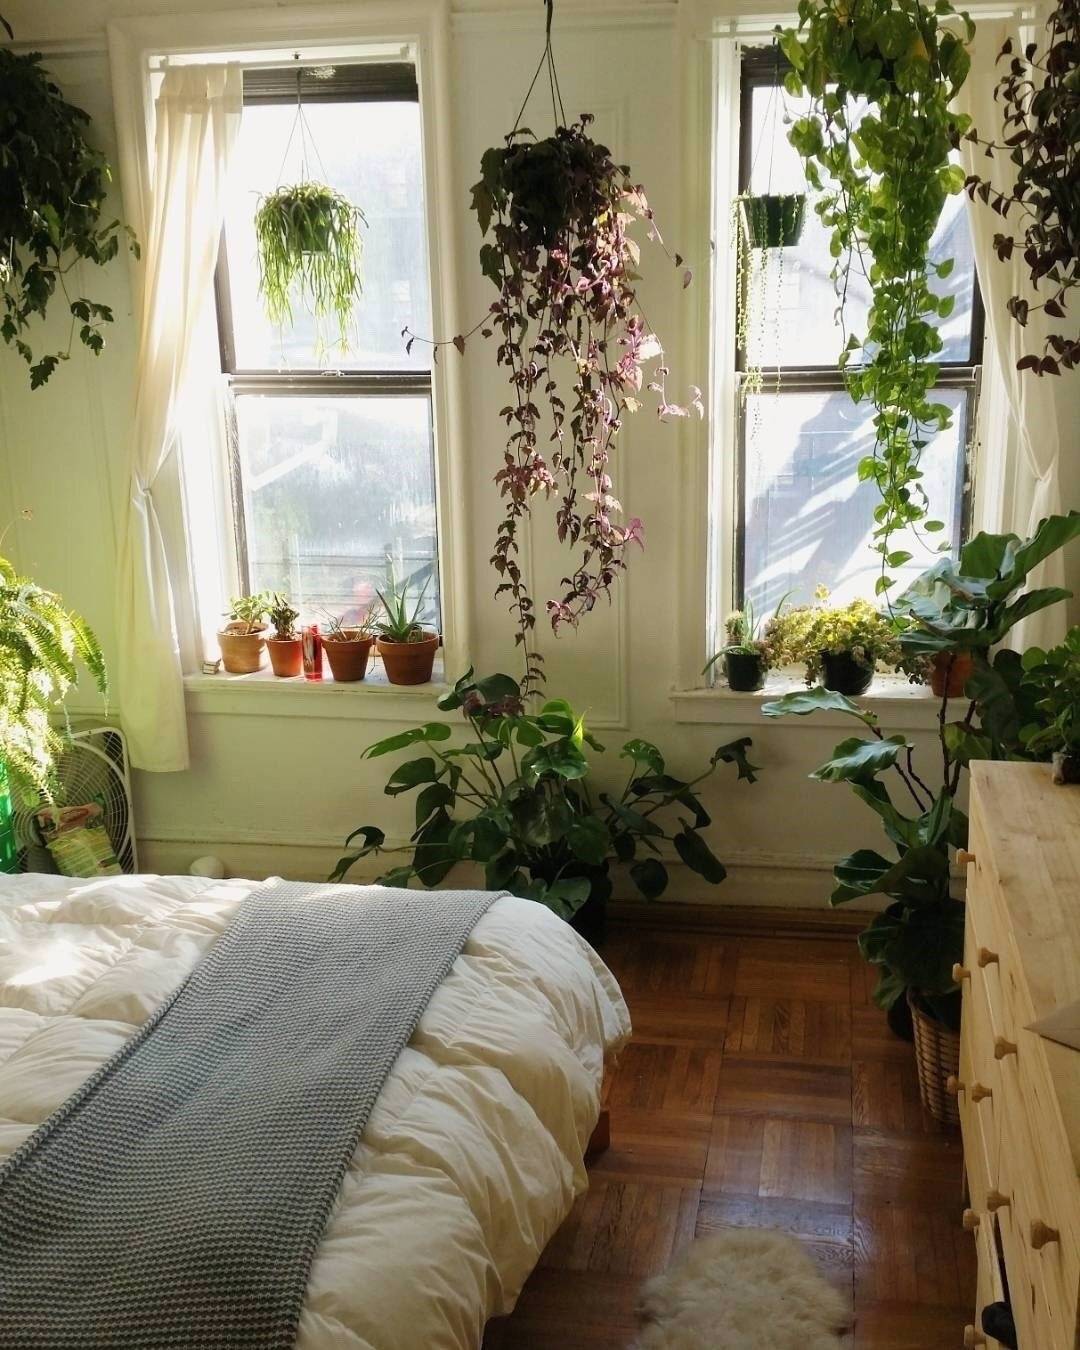 5 комнатных растений, производящих больше всего кислорода